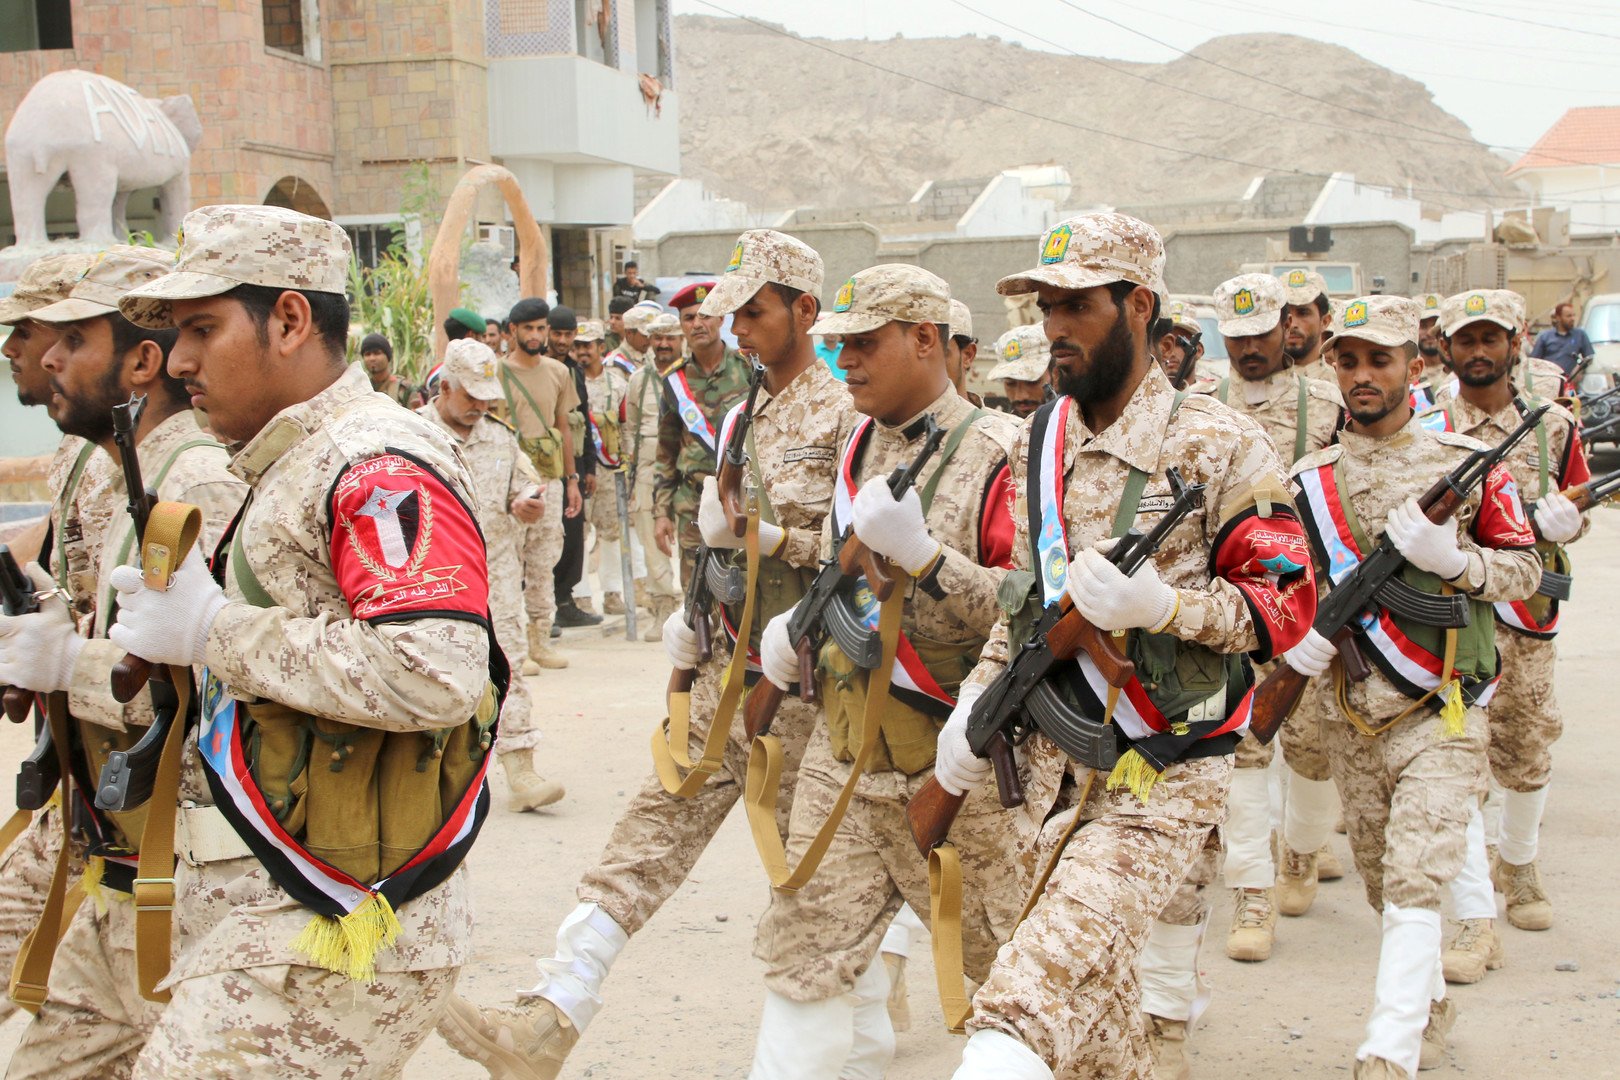 قوات الحزام الأمني تسيطر على القاعدة الإدارية والأمانة العامة لرئاسة الوزراء في عدن